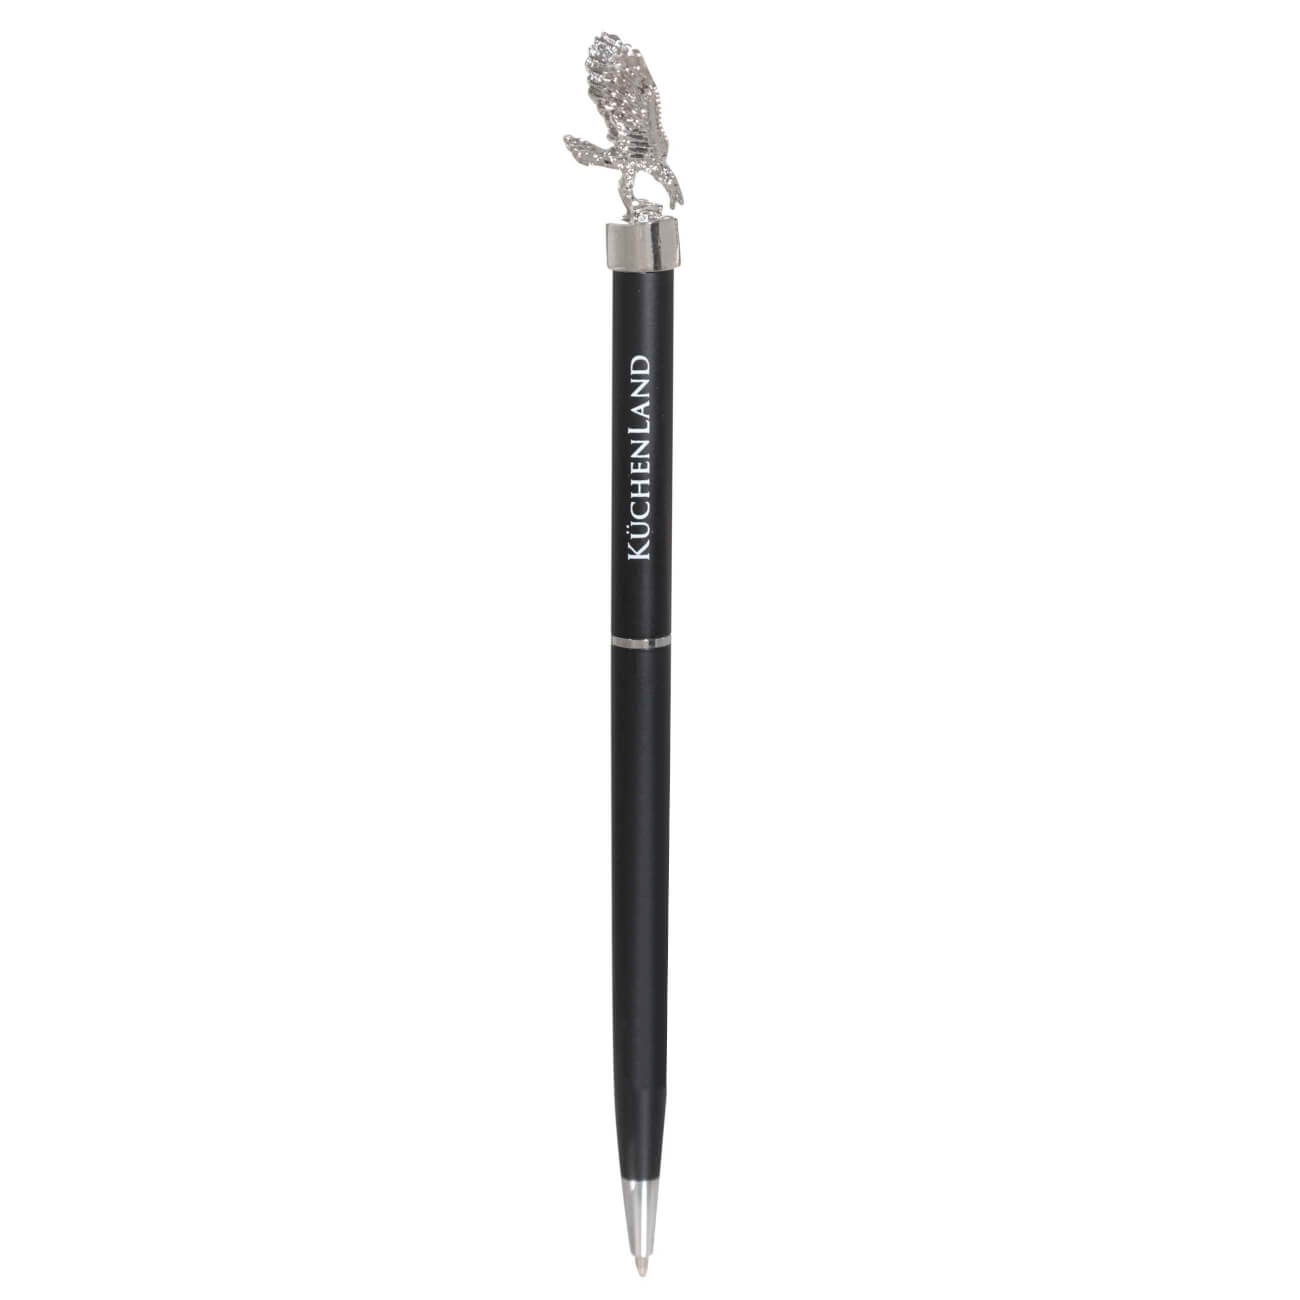 Ручка шариковая, 15 см, с фигуркой, сталь, черная, Орел, Draw figure изображение № 1